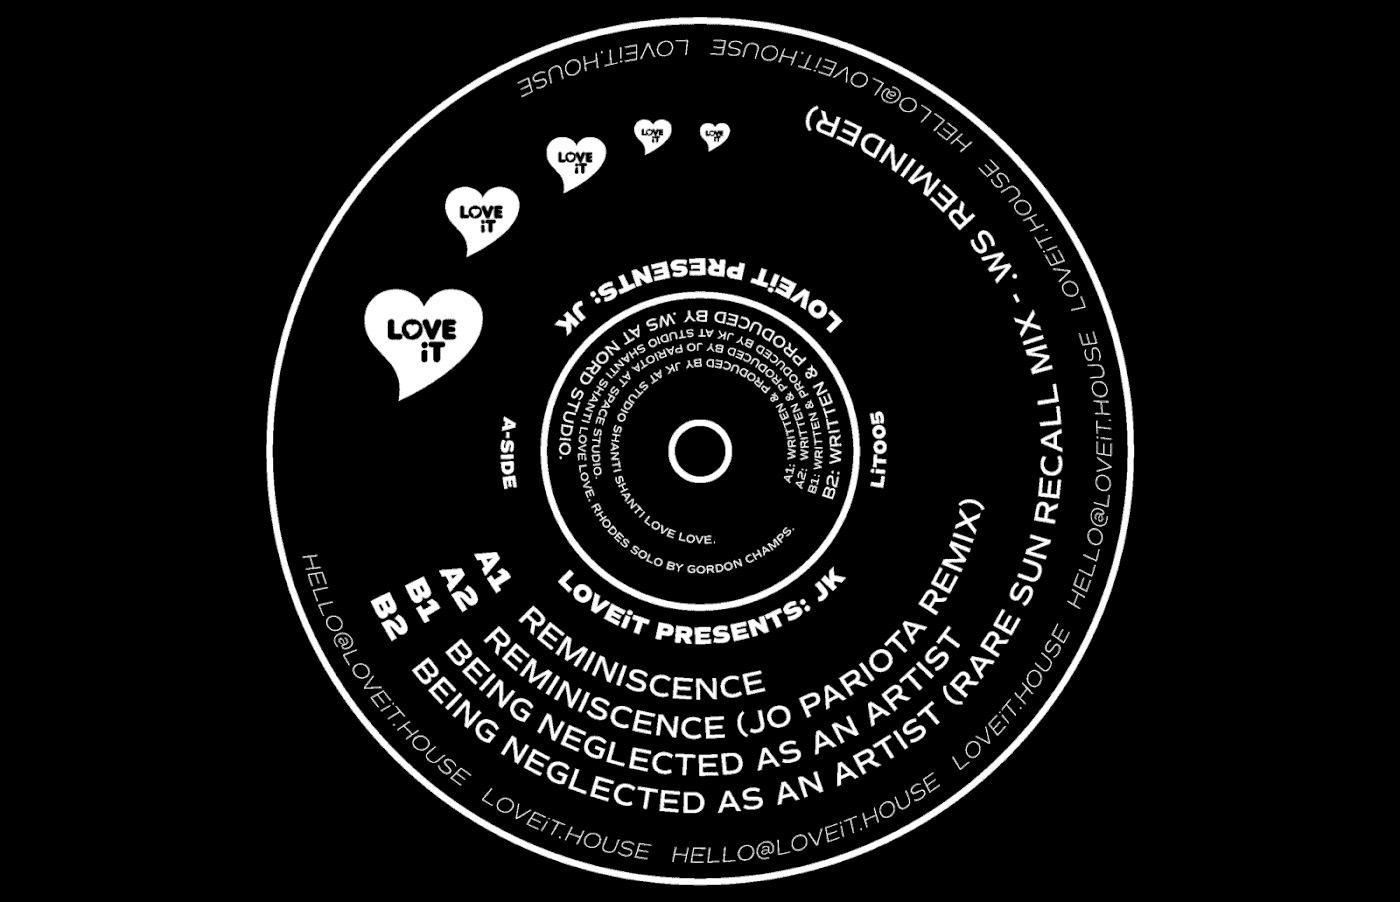 loveit artwork cover spin black White vinyl Records music Program